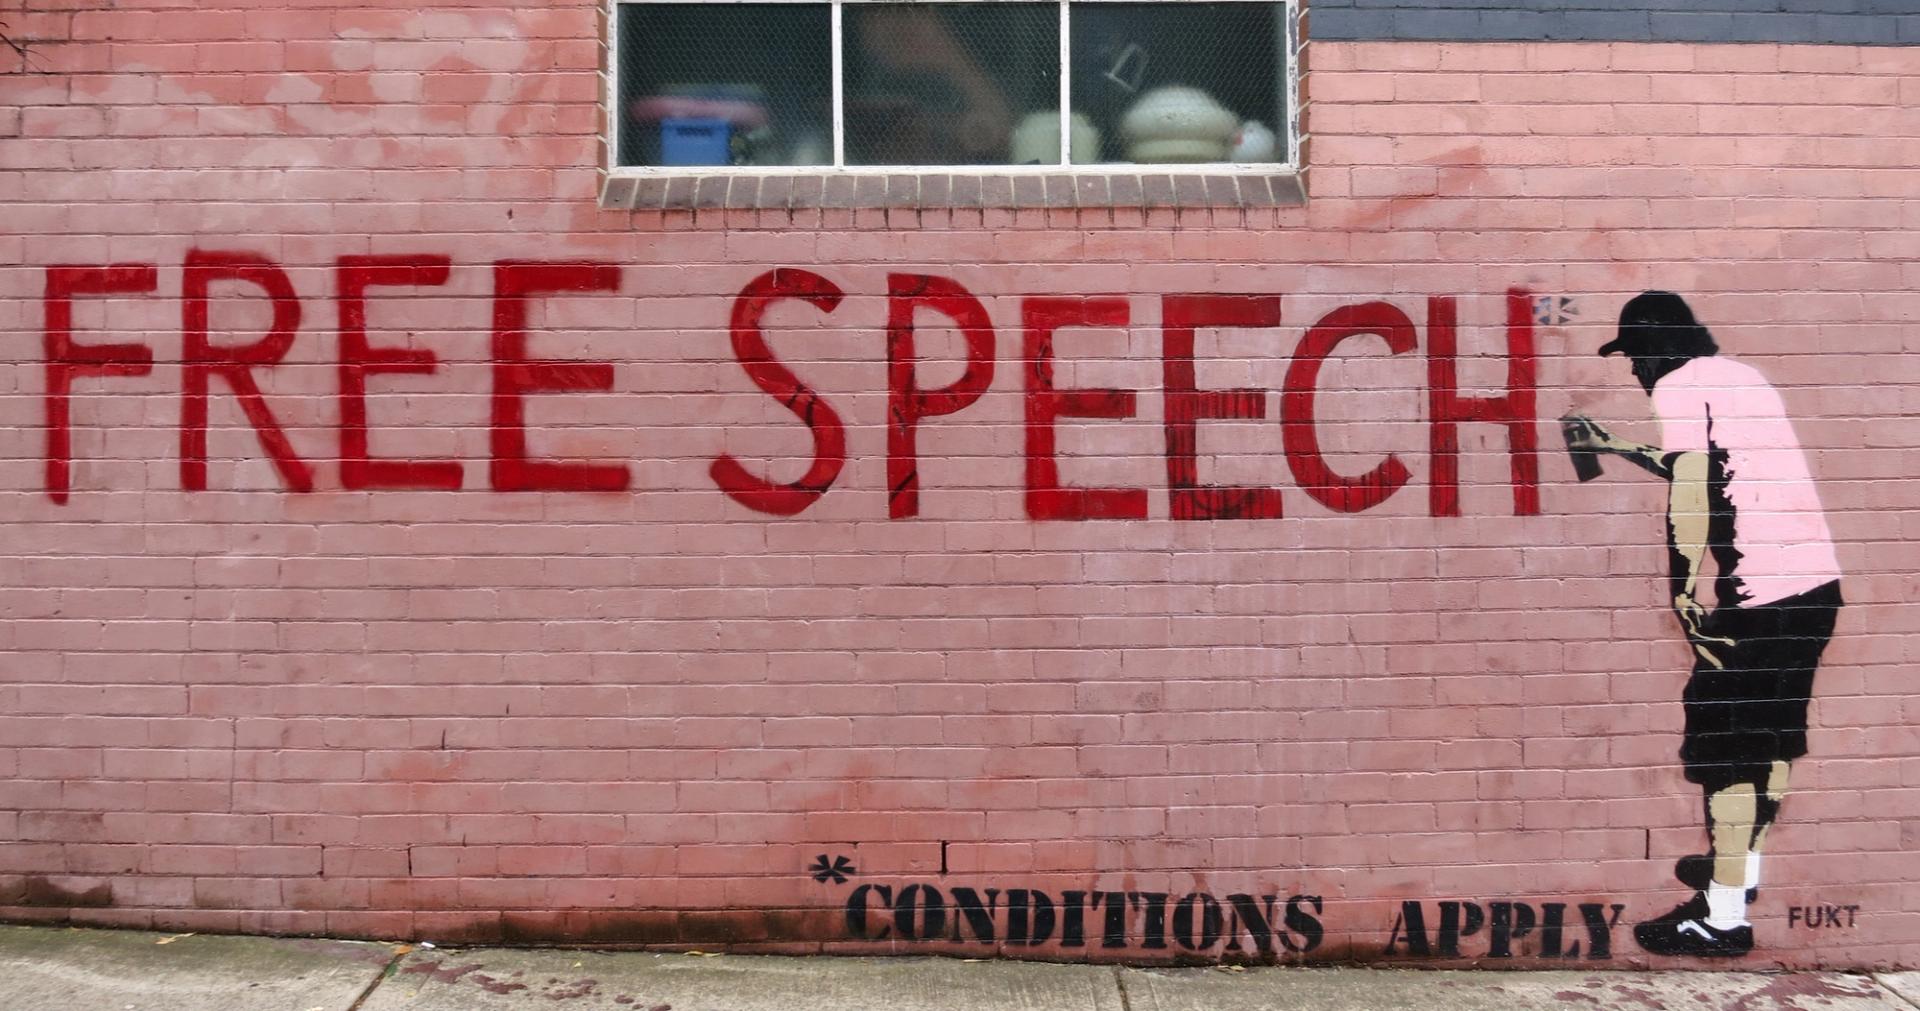 Street art. Le graffiti représente un homme qui peint à la bombe les mots liberté d'expression en lettres majuscules rouges. Un astérisque à la fin de la phrase fait référence à une phrase en bas du mur : les conditions s'appliquent.